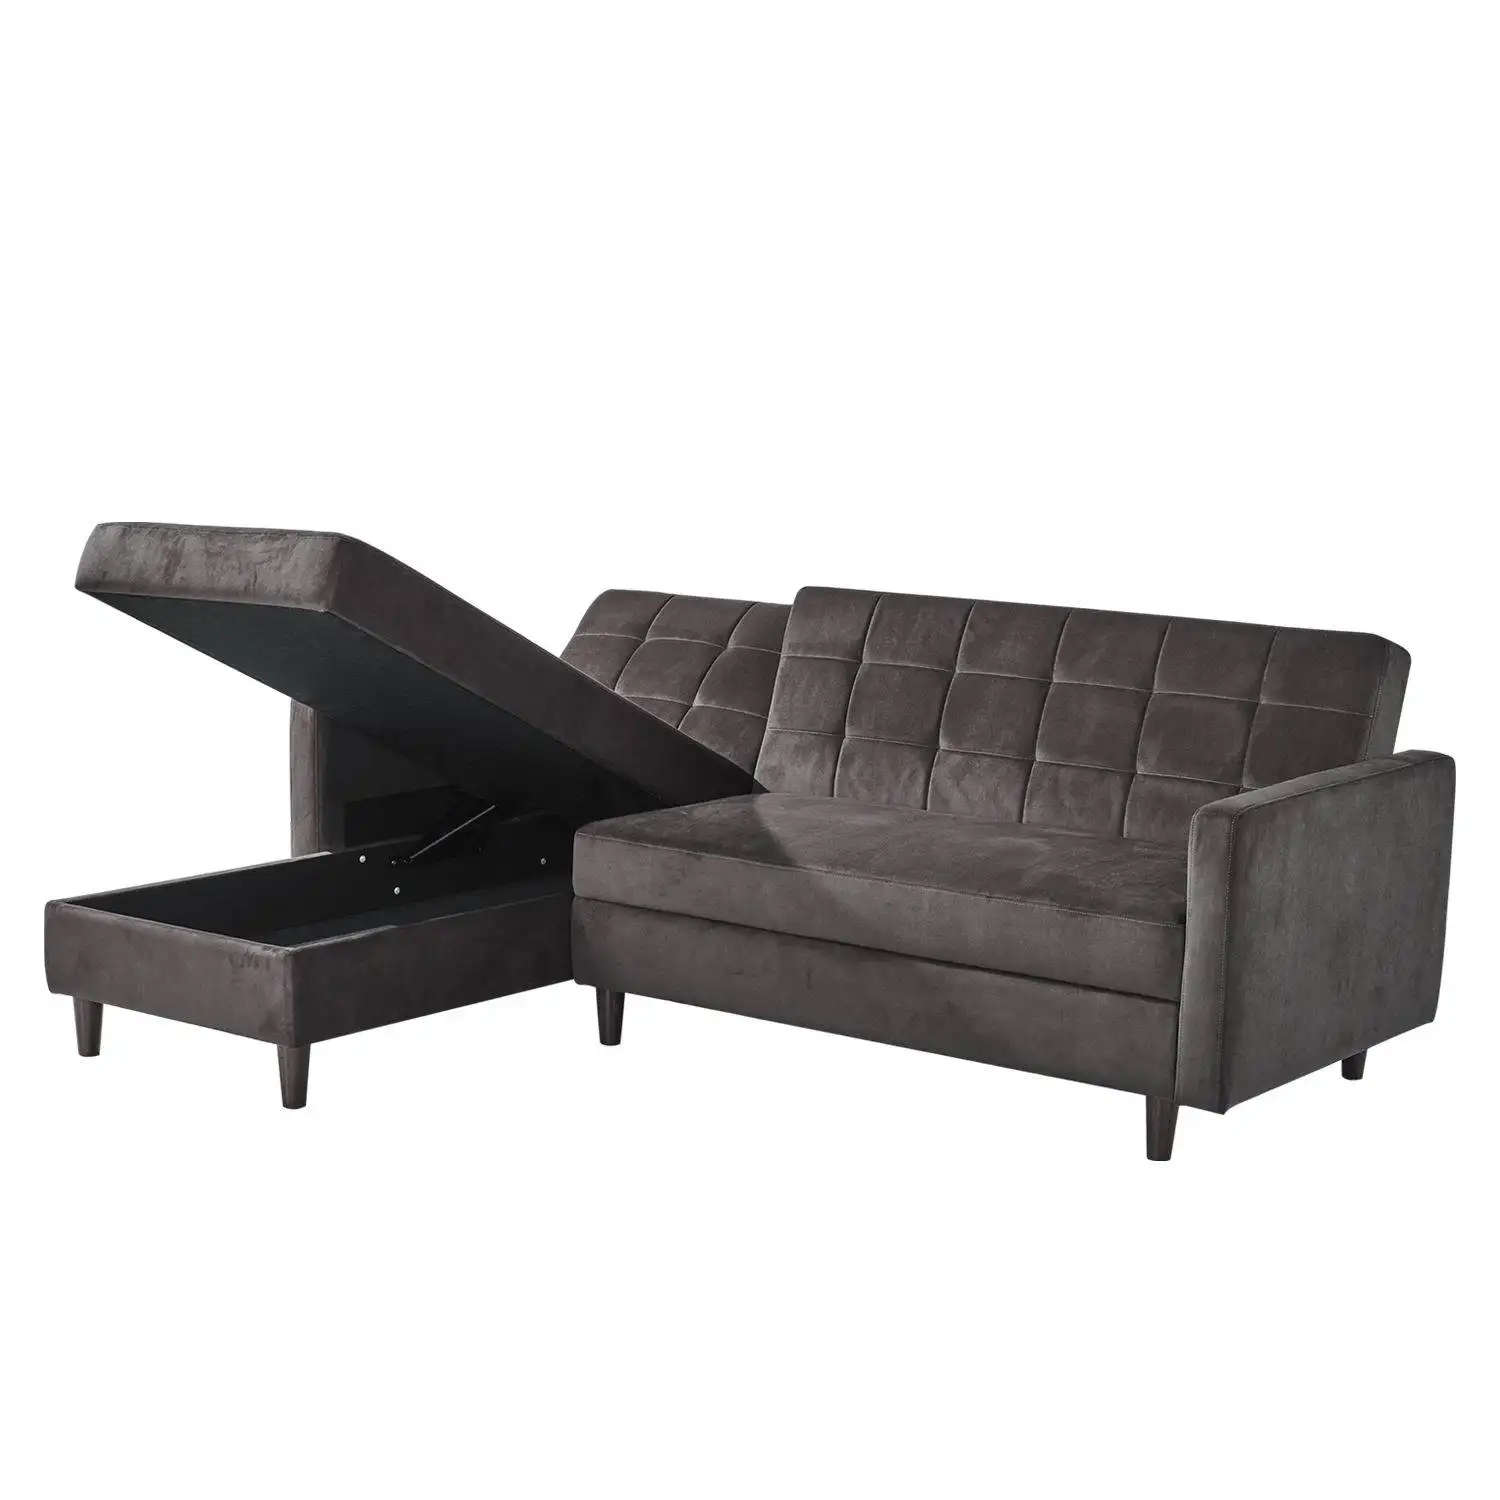 Kainice divano moderno cum bed con design ad angolo di stoccaggio mobili da soggiorno moderni divano letto funzionale divani per la casa